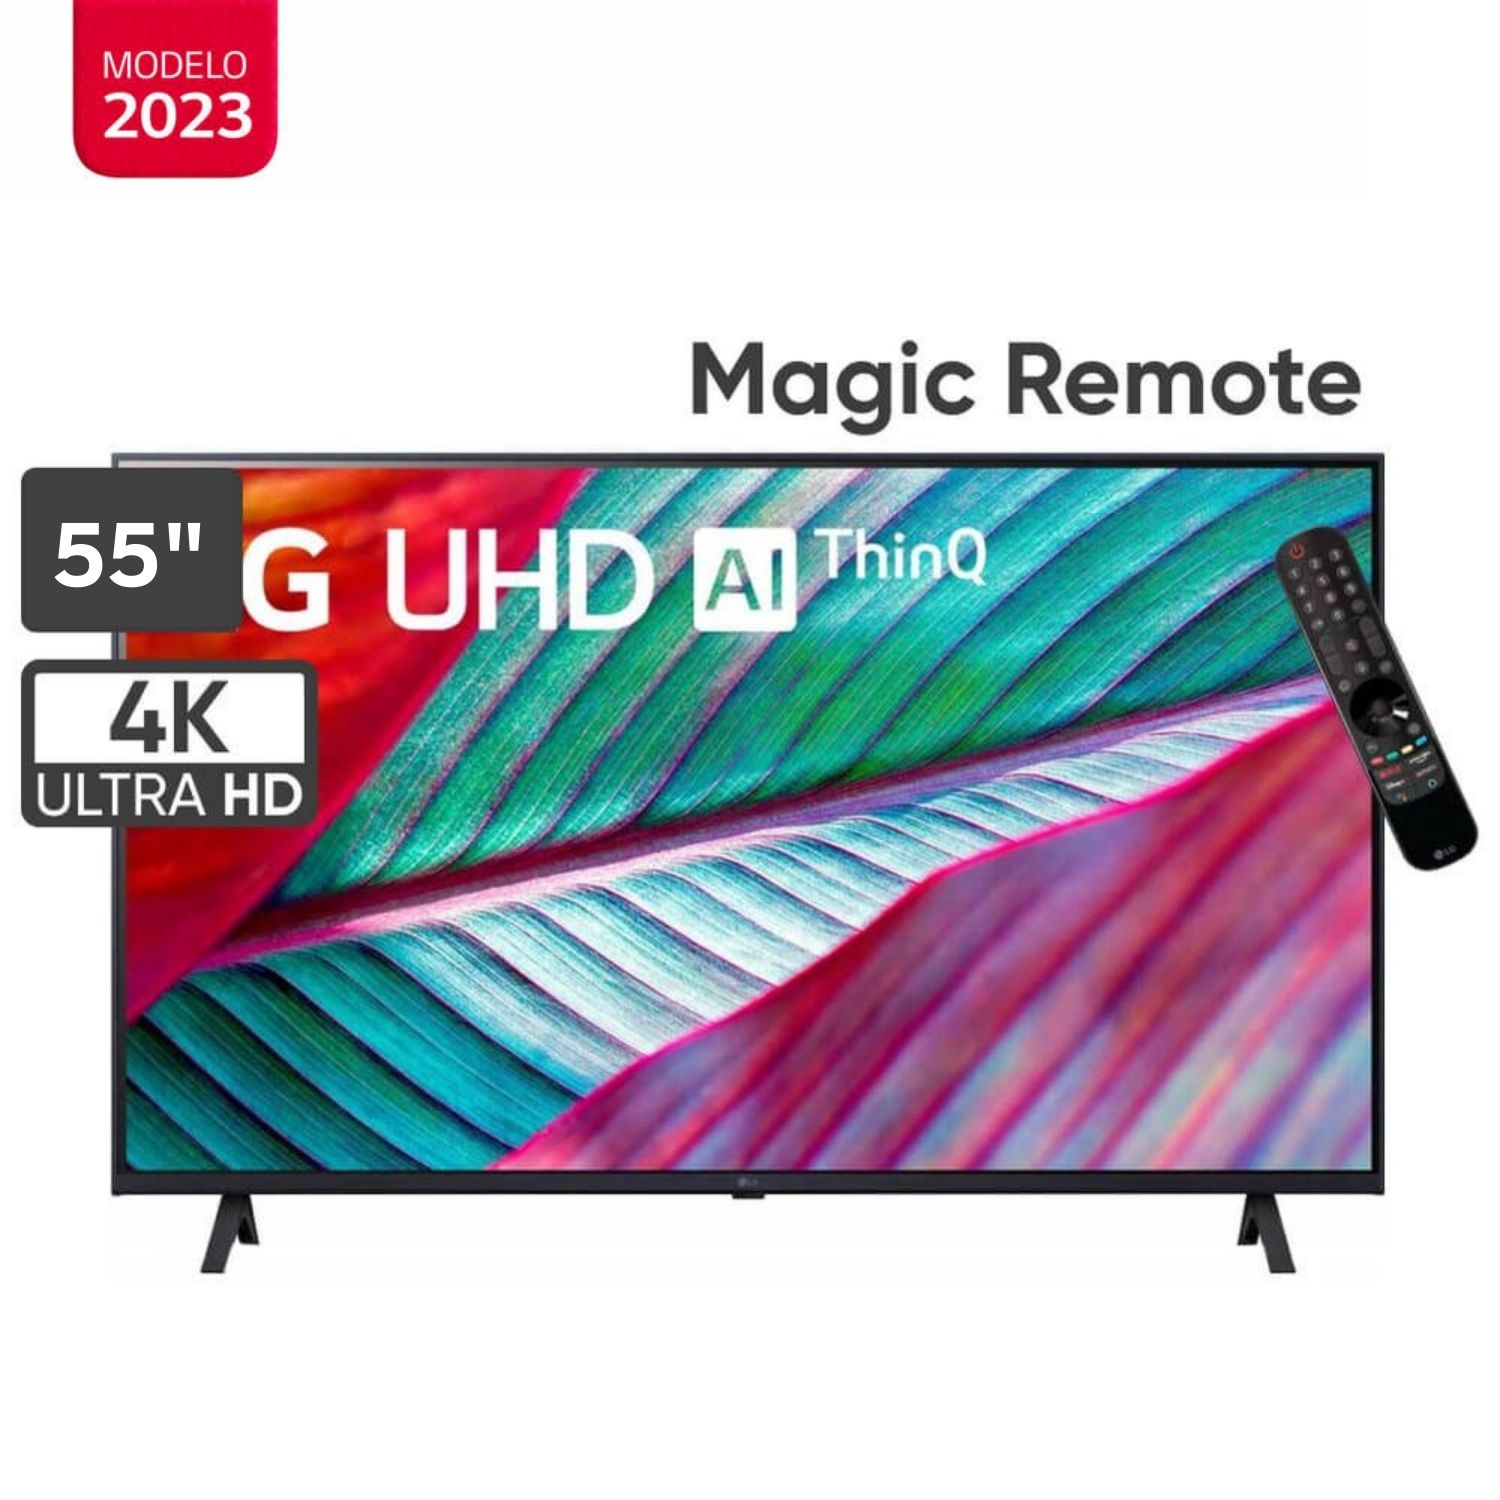 Televisor LG 55" LED Smart TV Ultra HD 4K con ThinQ AI 55UR8750PSA